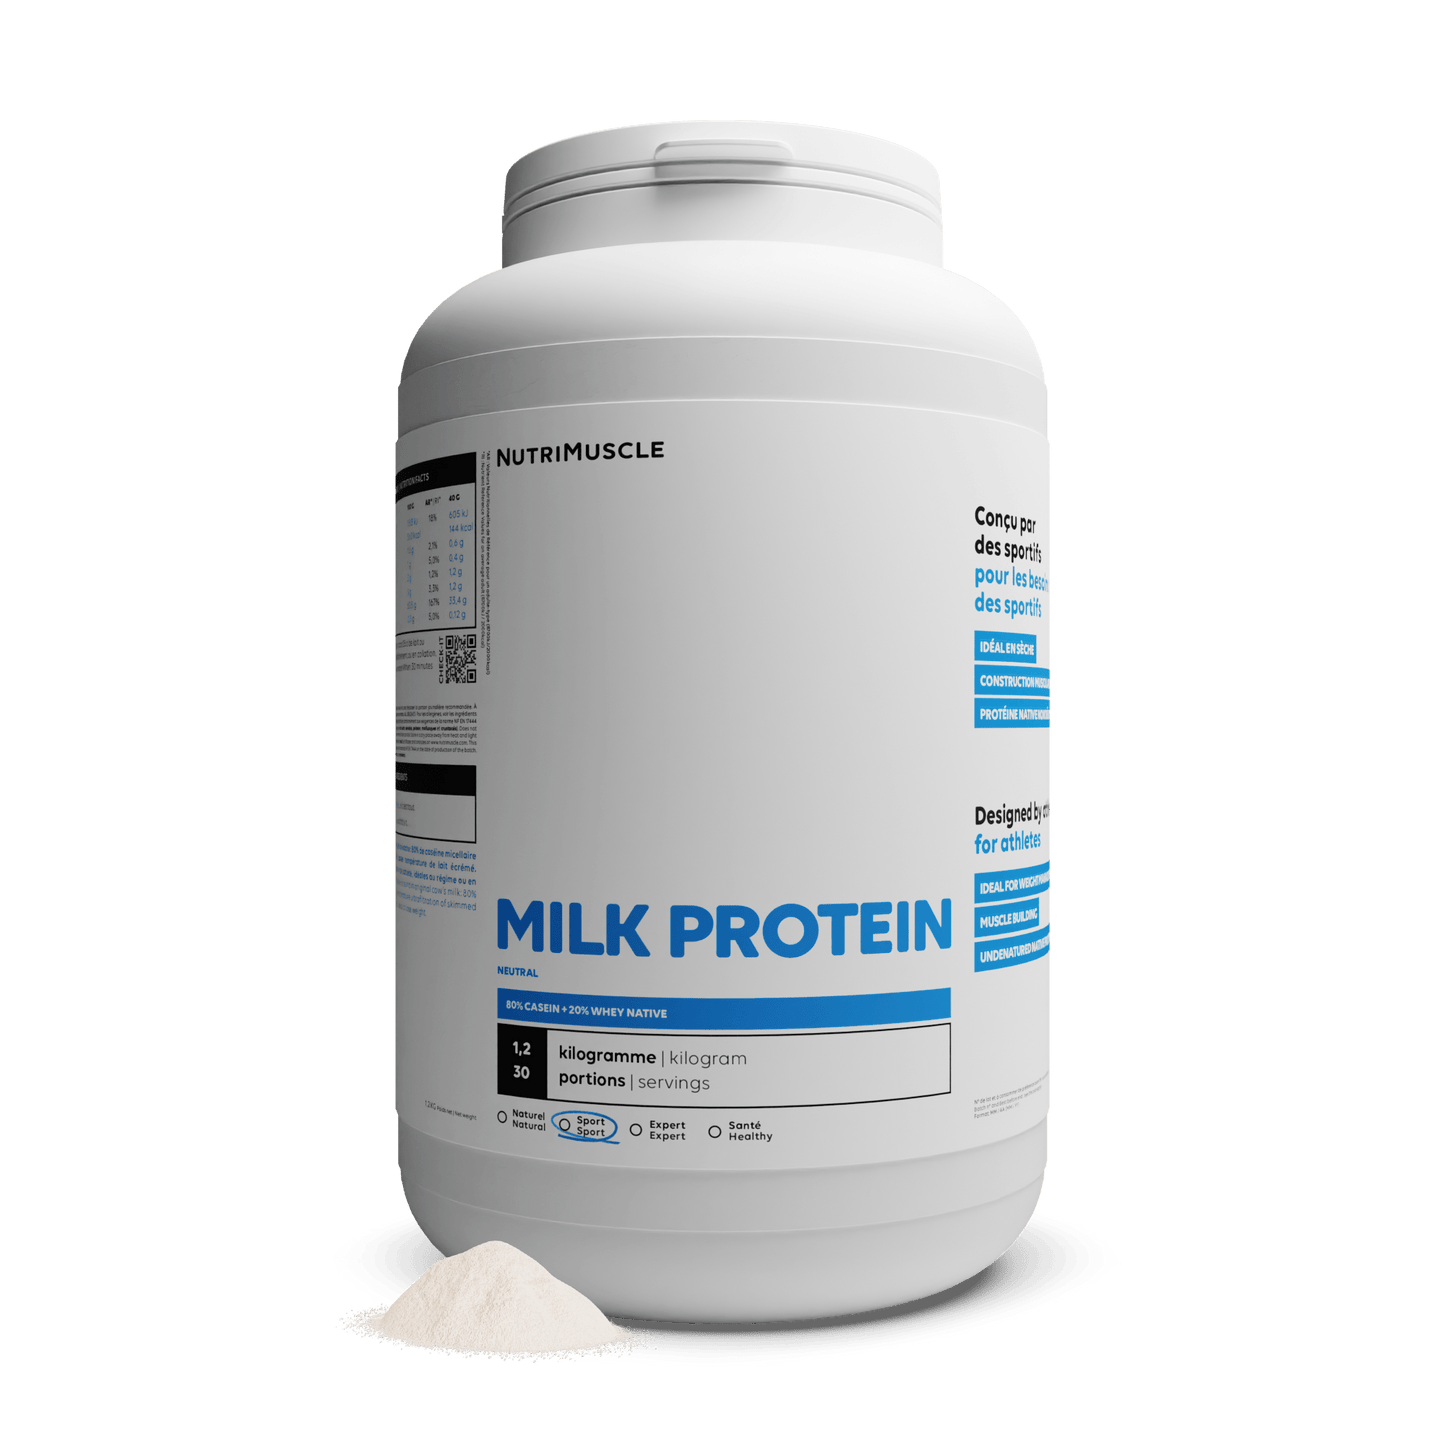 Nutrimuscle Protéines Nature / 1.20 kg Protéines Totales